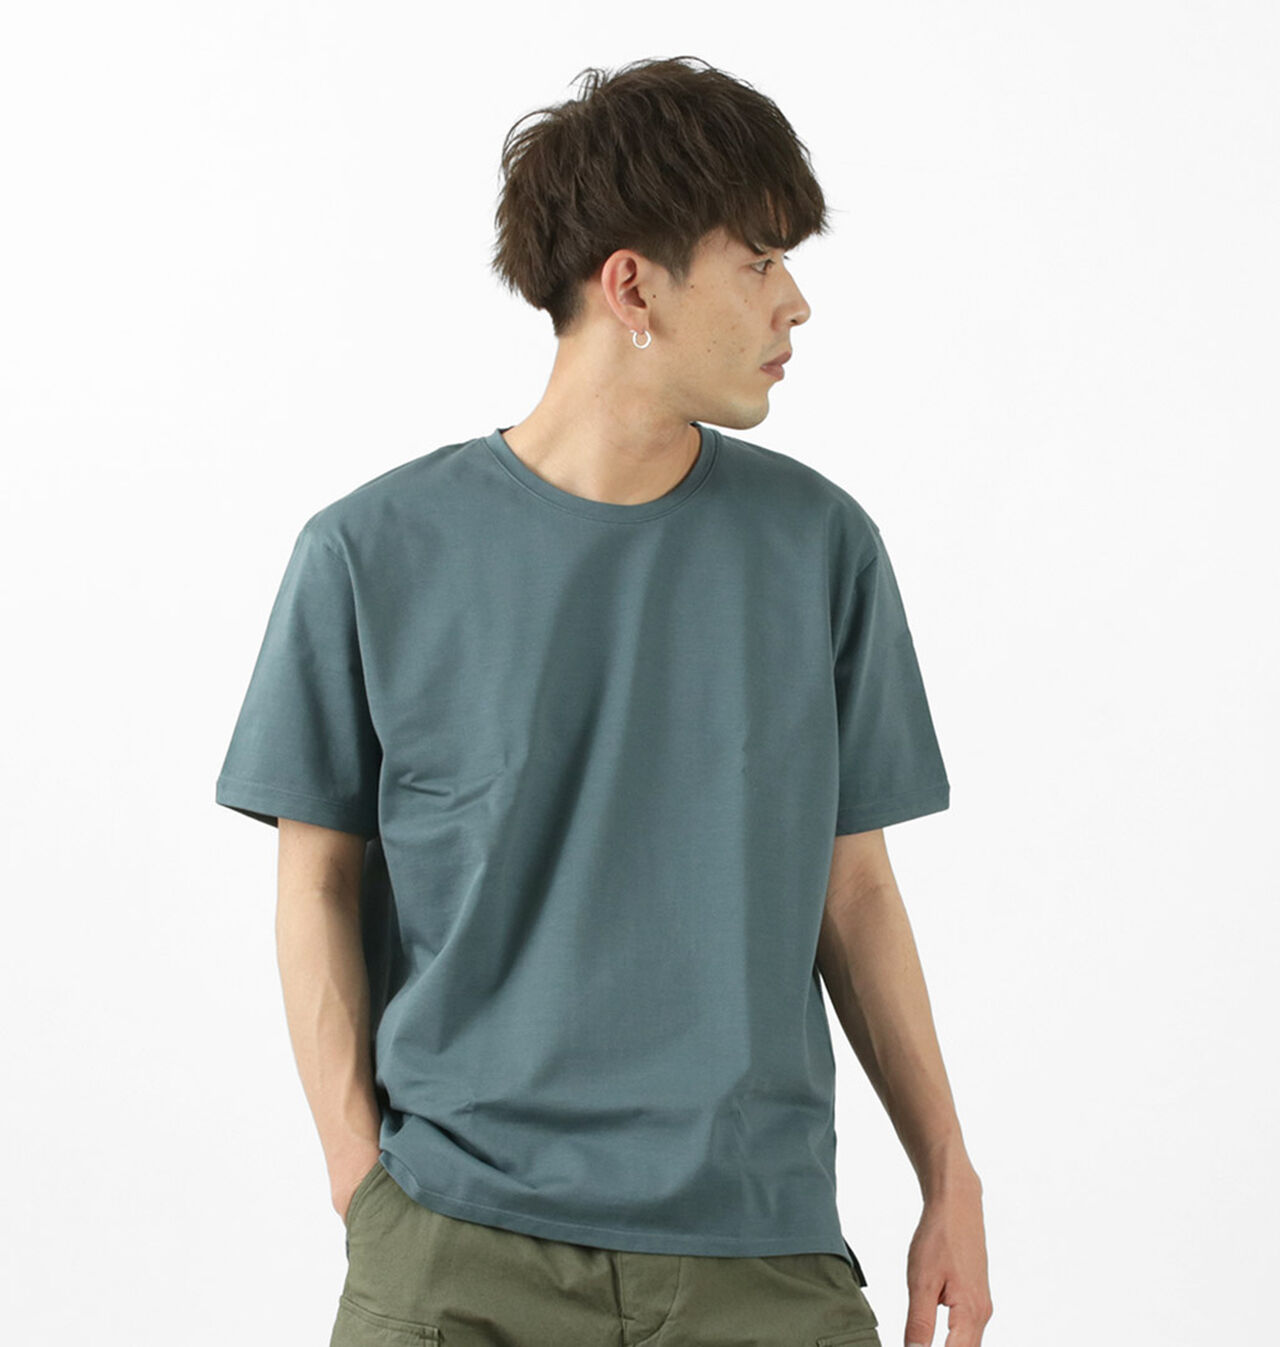 Tokyo Made Dress Organic T-shirt,BlueGrey, large image number 0